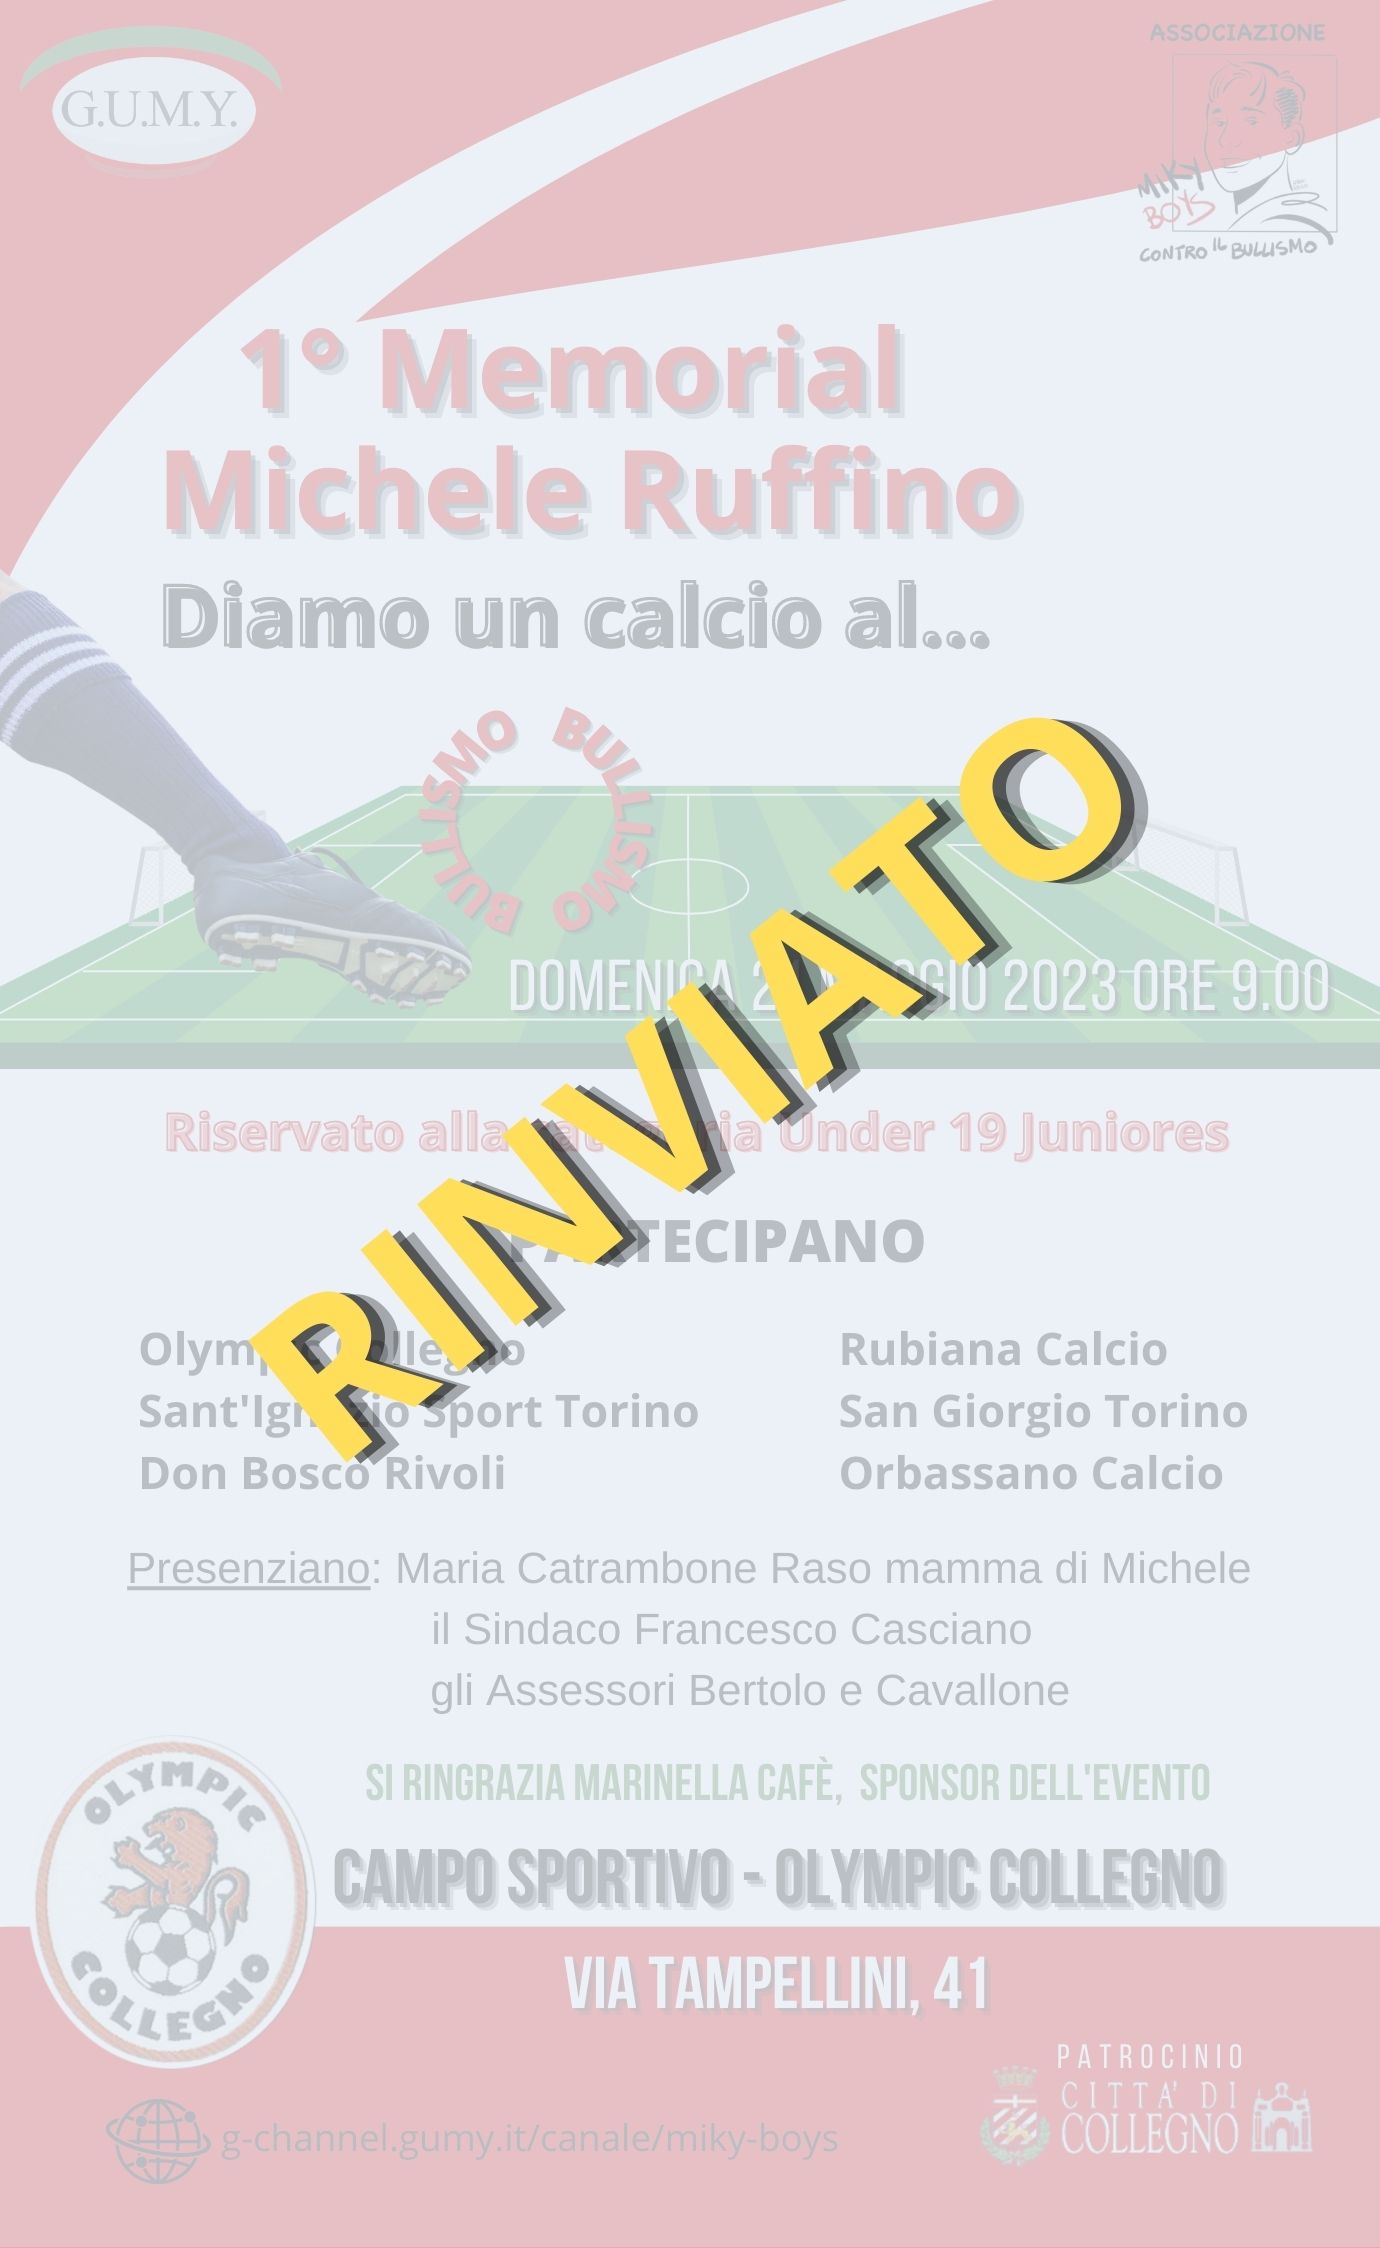 L'evento 1 Memorial Michele Ruffino rinviato per maltempo